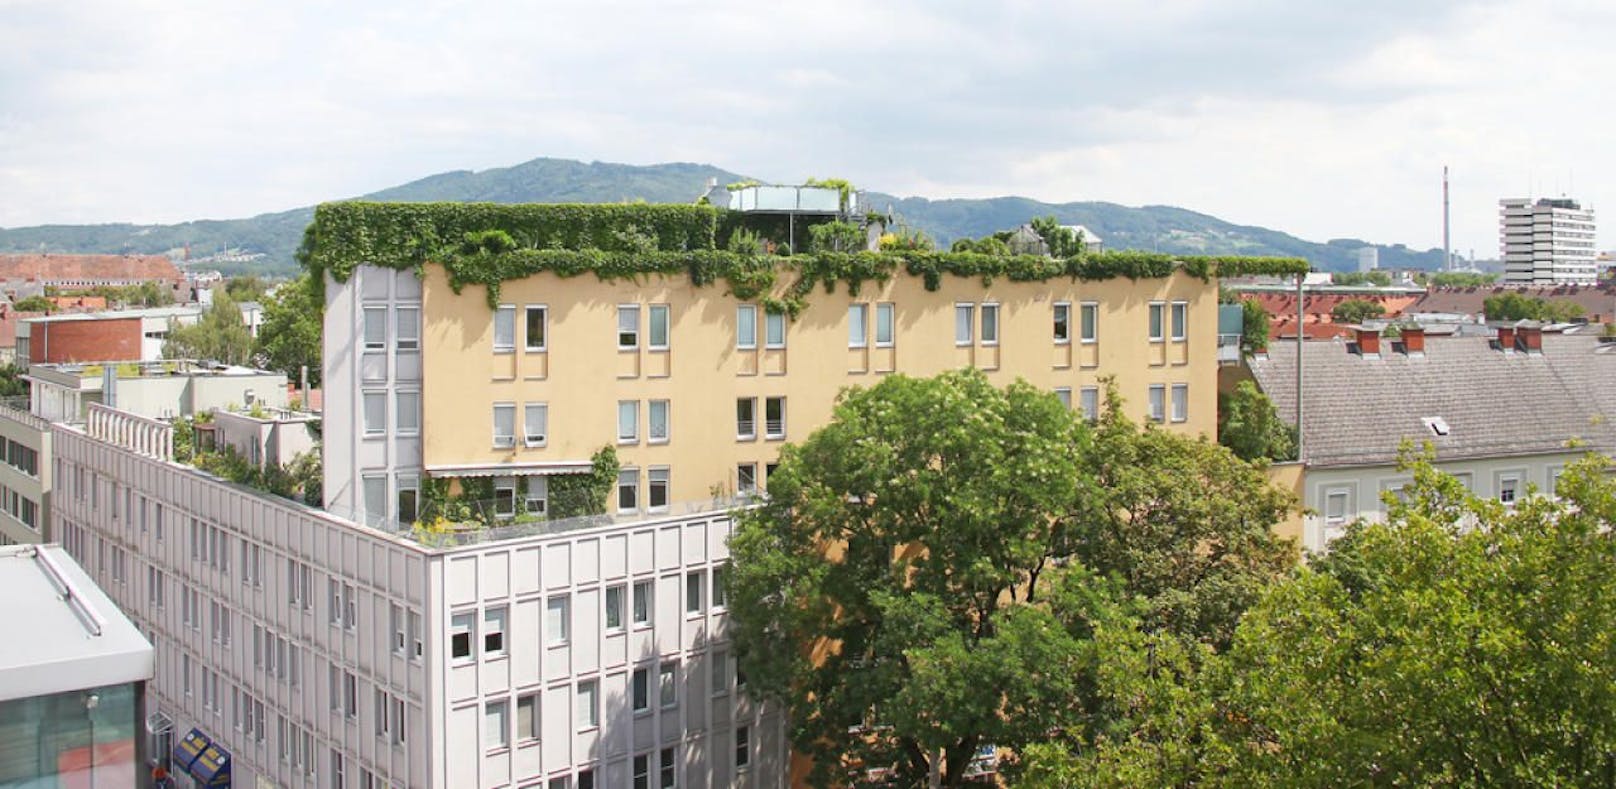 Grüne Dächer wie dieses in Linz, soll es bald auch verstärkt in Wien geben.